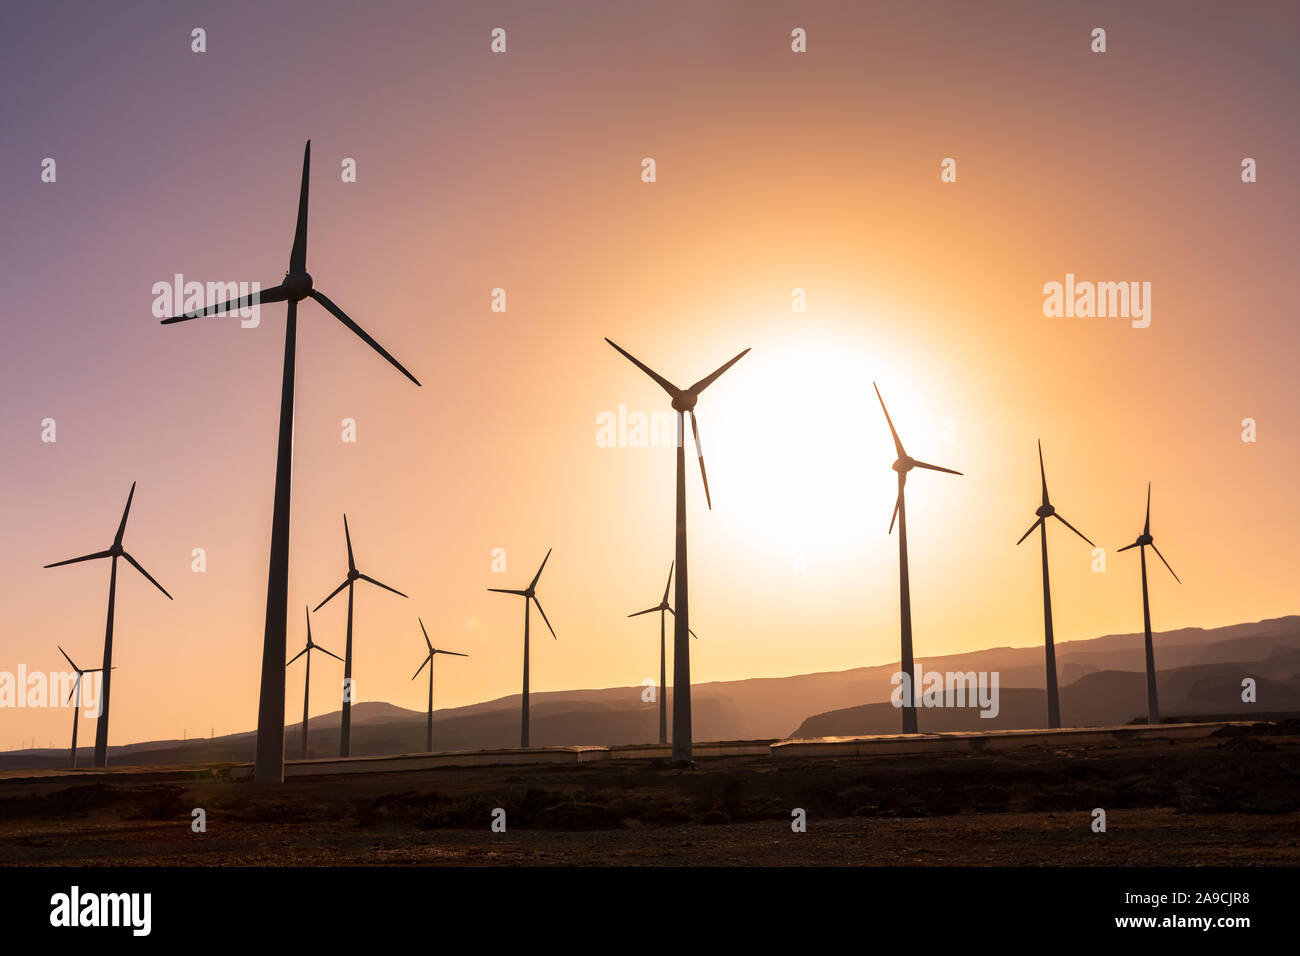 La ferme éolienne de production d'énergie renouvelable au coucher du soleil, plusieurs moulin produisant de l'électricité écologique propre, développement durable Banque D'Images